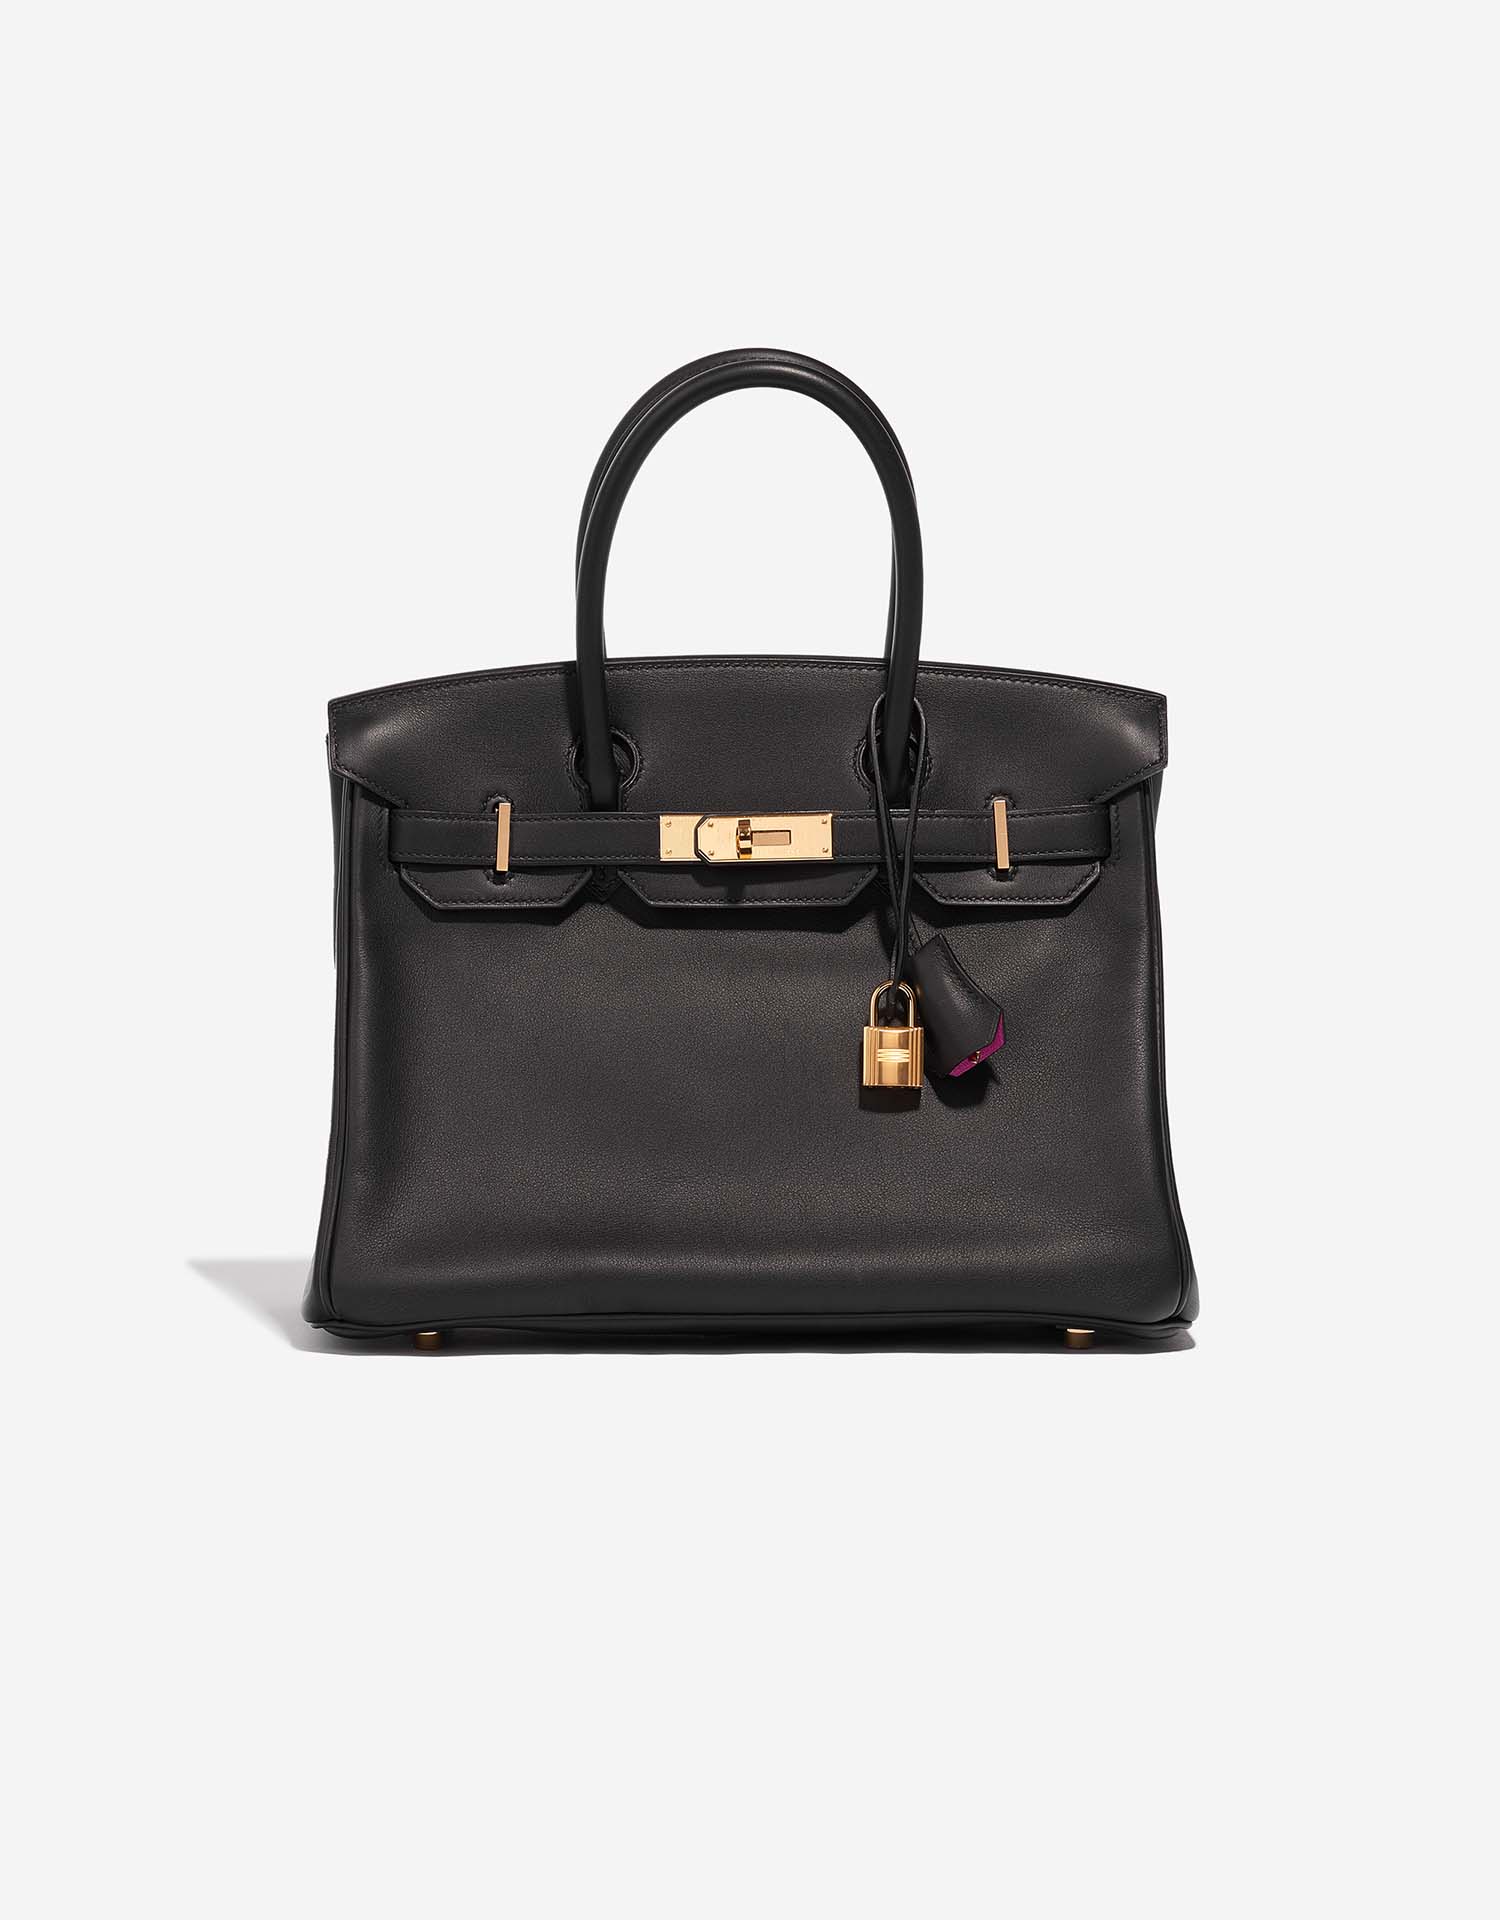 Hermès Birkin HSS 30 Swift Black / Magnolia | SACLÀB